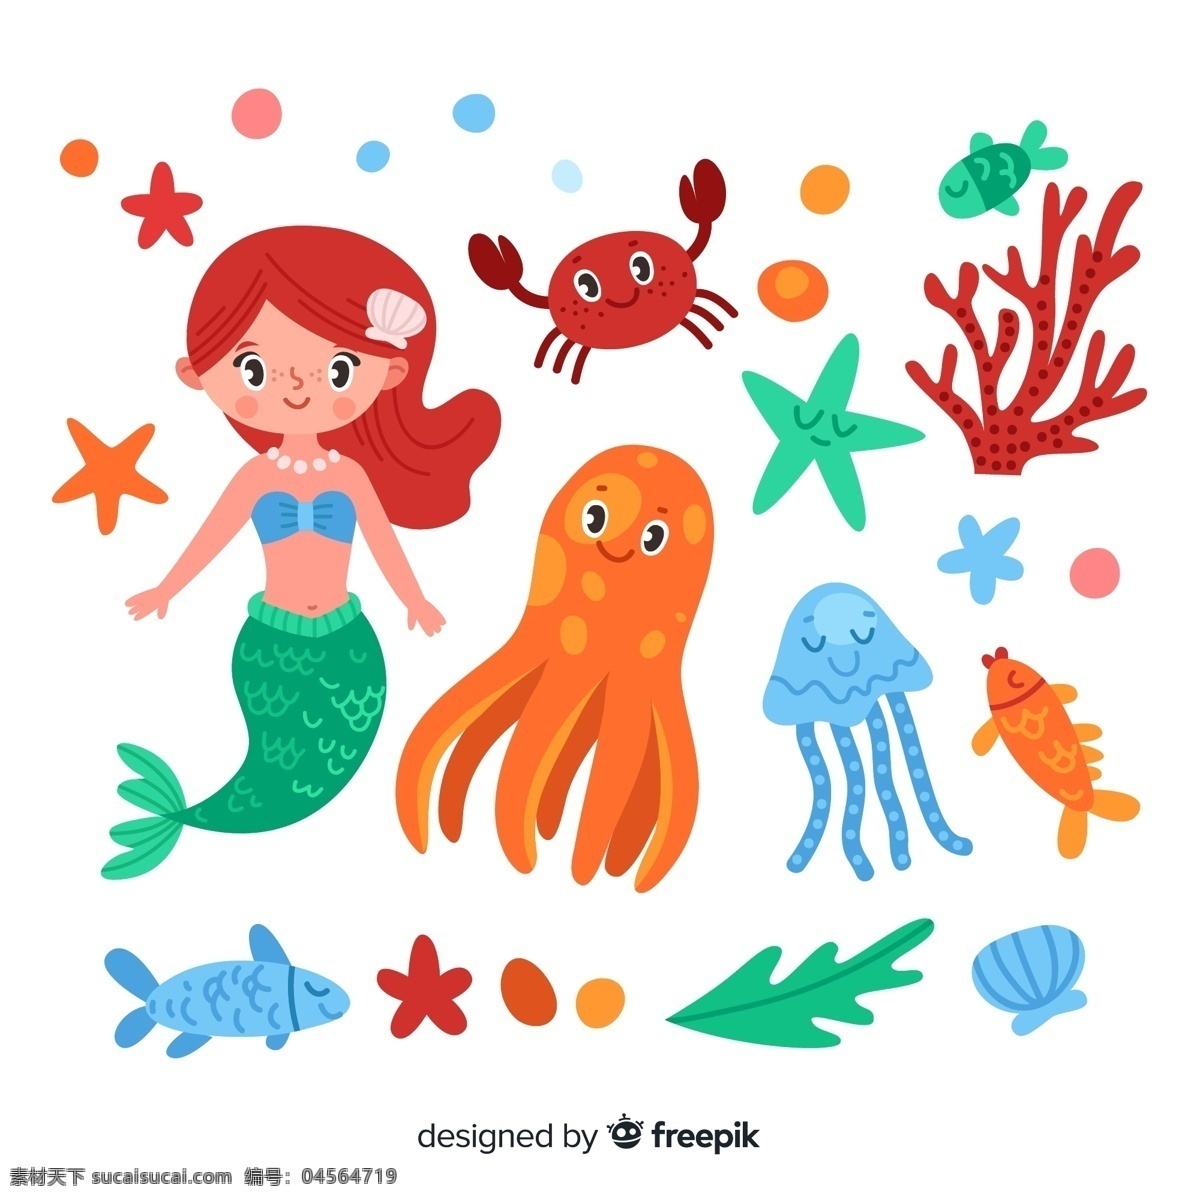 可爱美人鱼 和海洋动物 矢量素材 海星 螃蟹 水母 章鱼 珊瑚 海草 鱼 大海 气泡 可爱 美人鱼 海洋动物 矢量图 ai格式